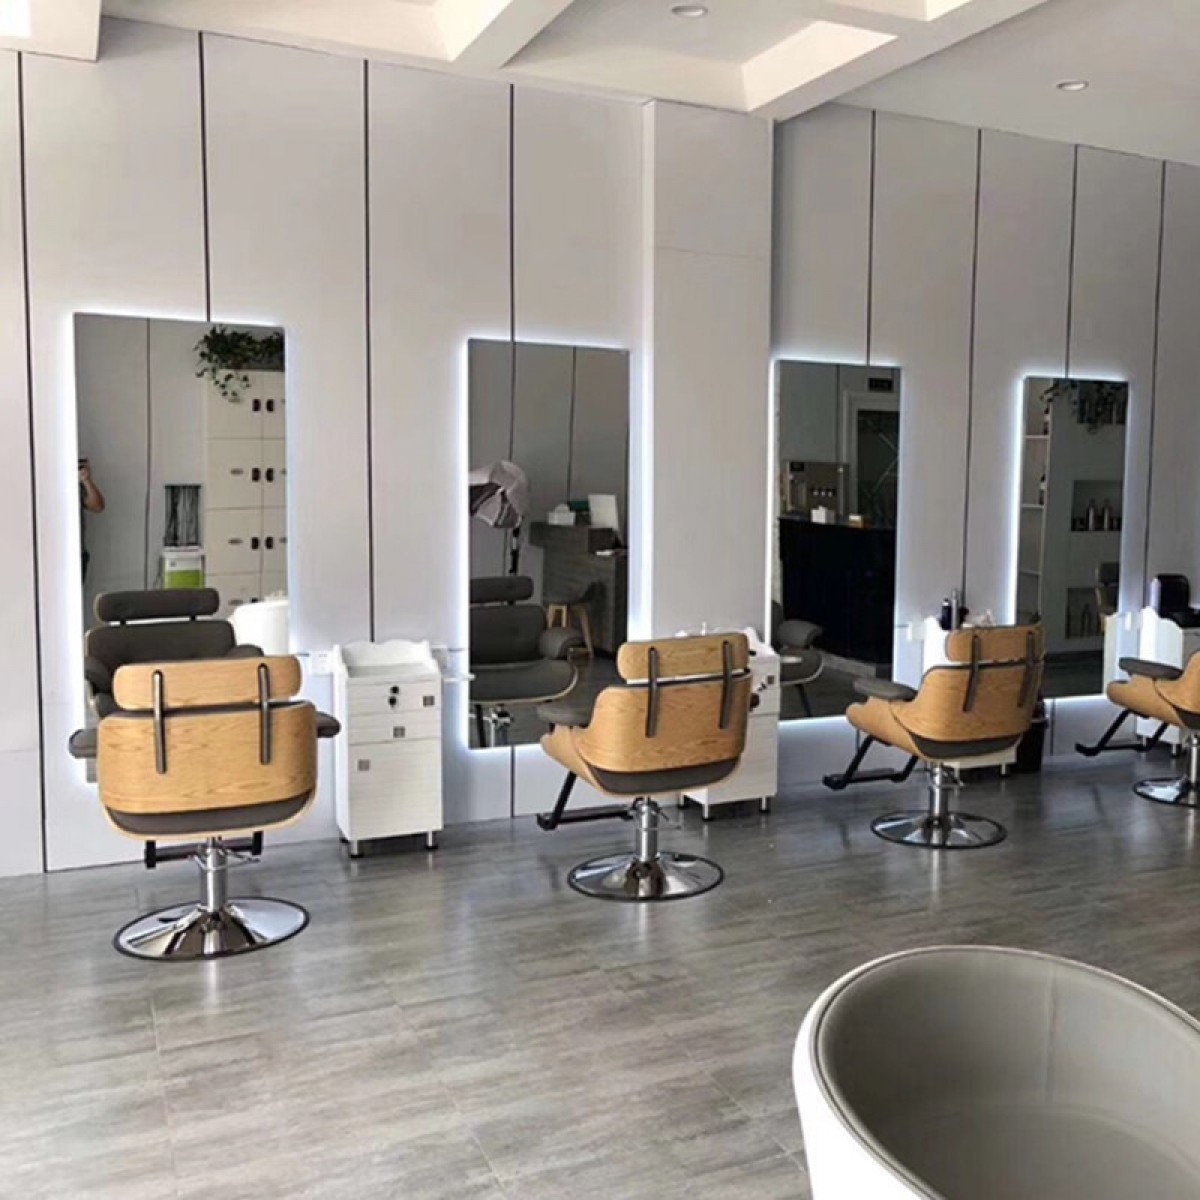 Achetez des stations de coiffure de votre salon avec des produits d'Israël